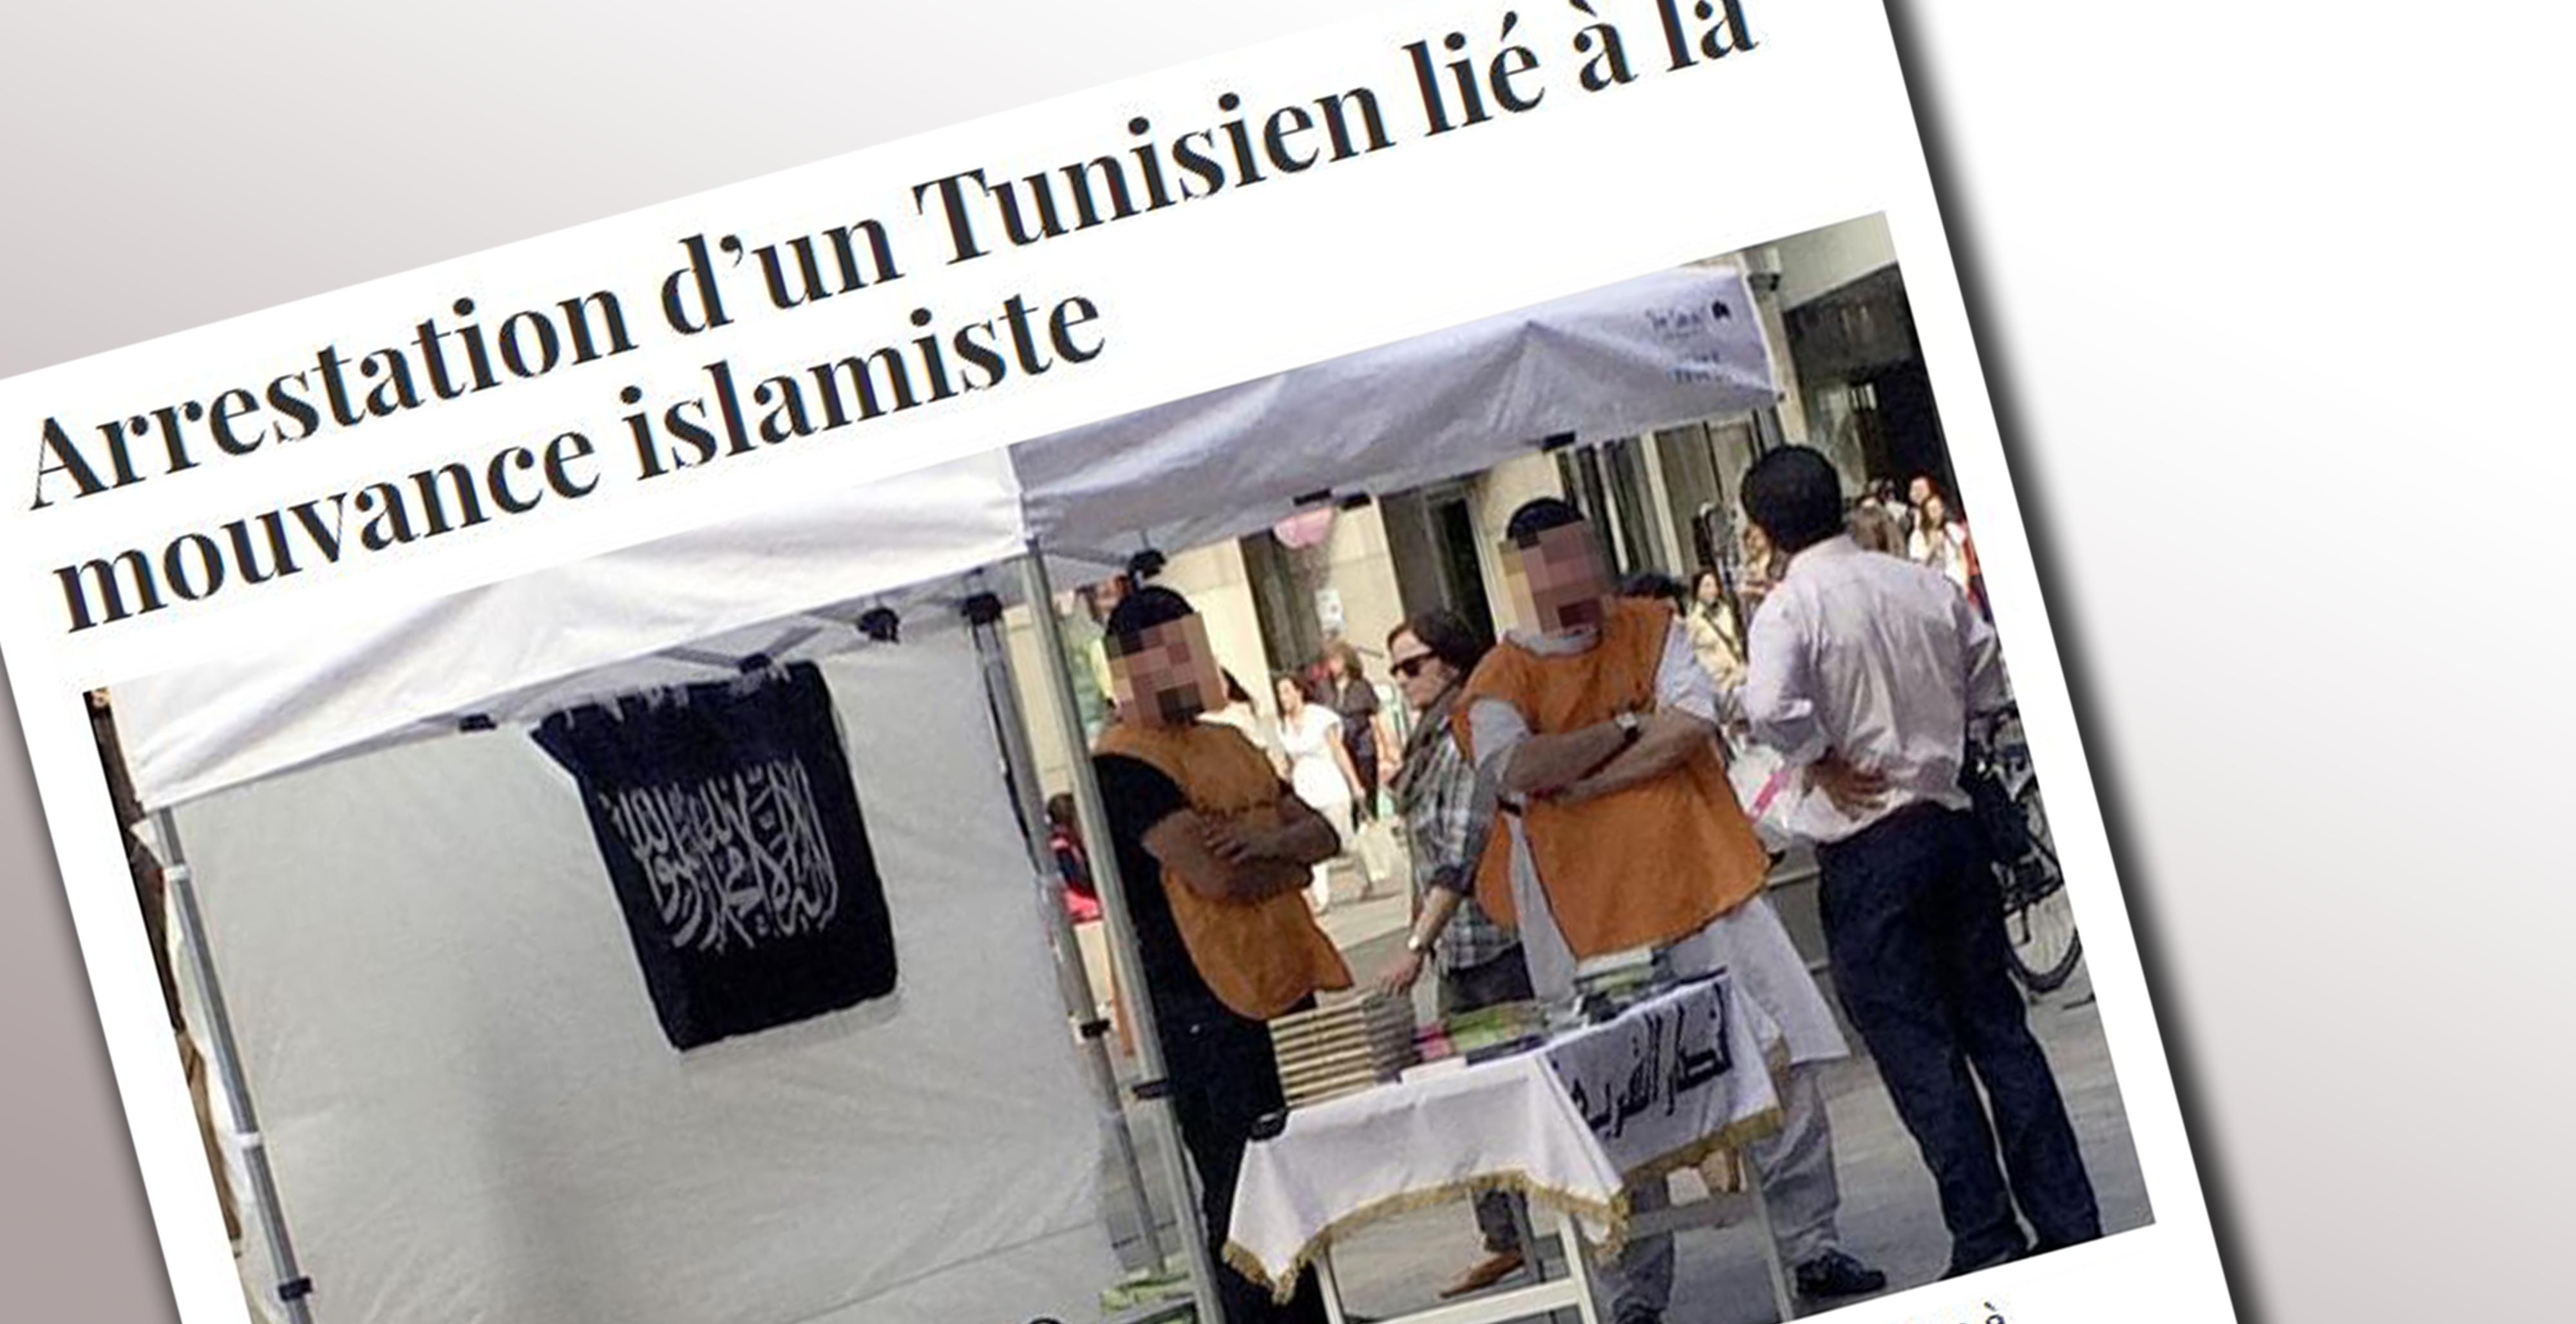 Lié à la mouvance islamiste, un Tunisien résidant à Genève est écroué. [tdg.ch]